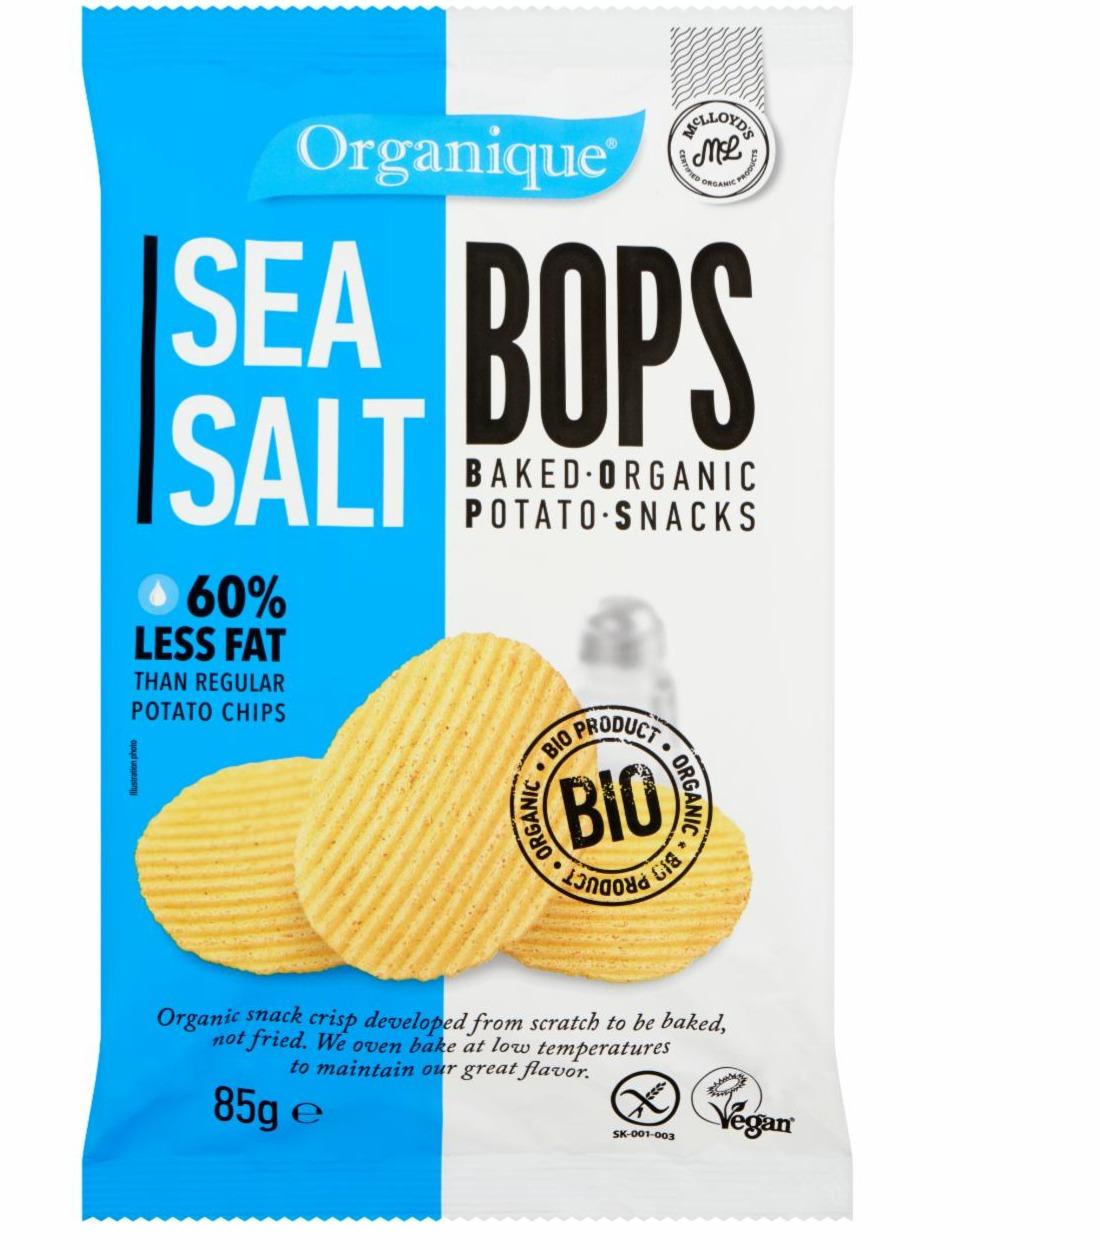 Képek - McLloyd's tengeri sós ízesítésű sült burgonyás bio snack 85 g